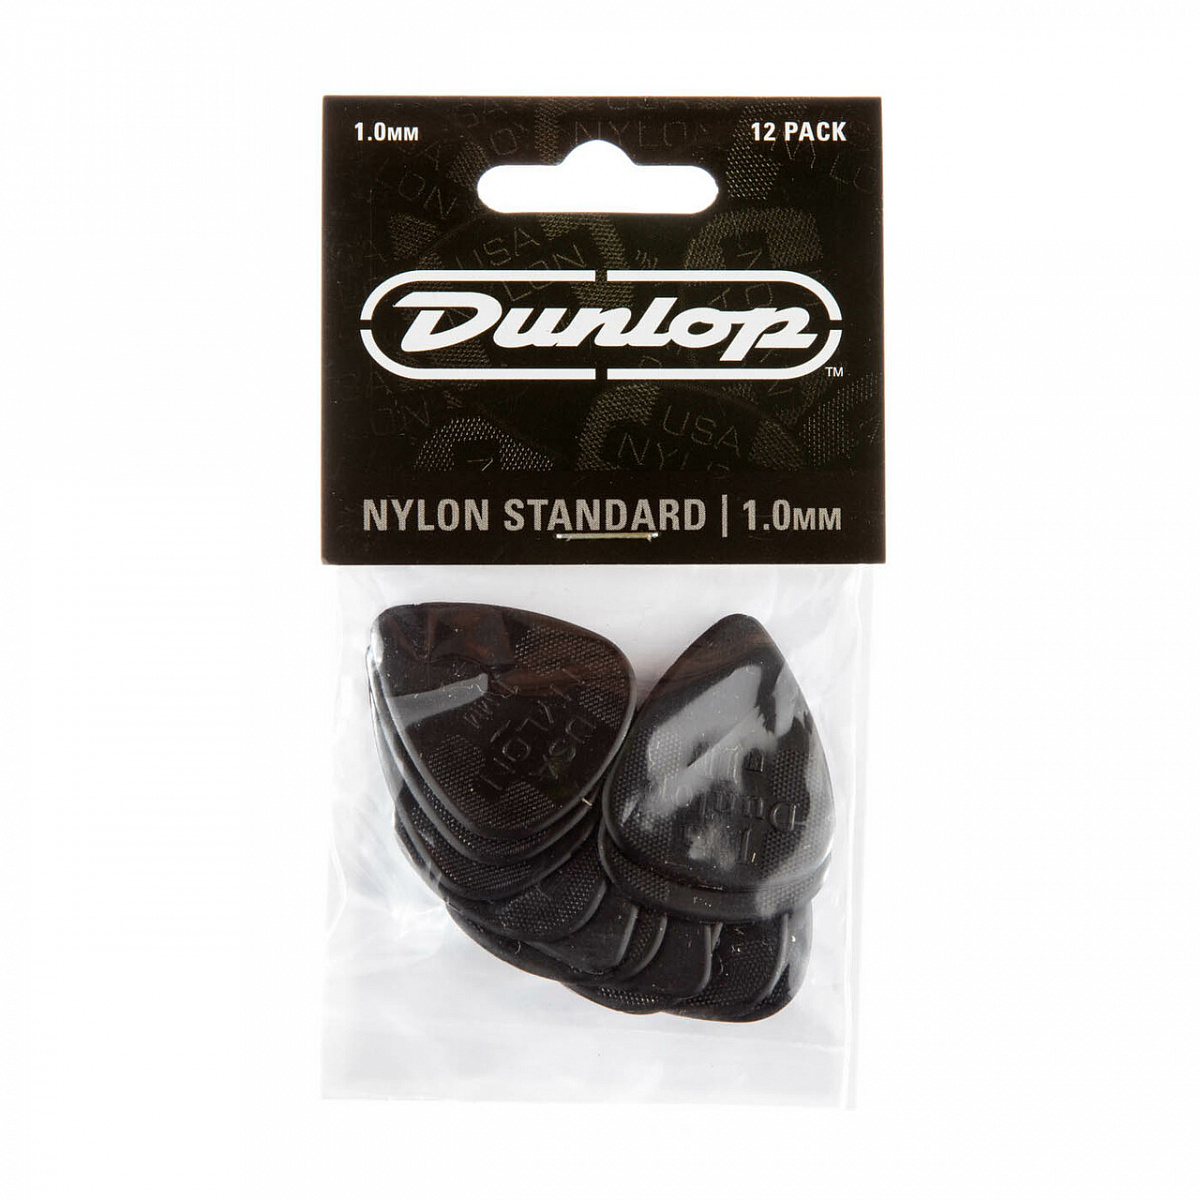 Dunlop производитель. Dunlop 44p1.25 nylon Standard медиатор, толщина 1.25мм. Dunlop Match. Match pik USA медиатор.